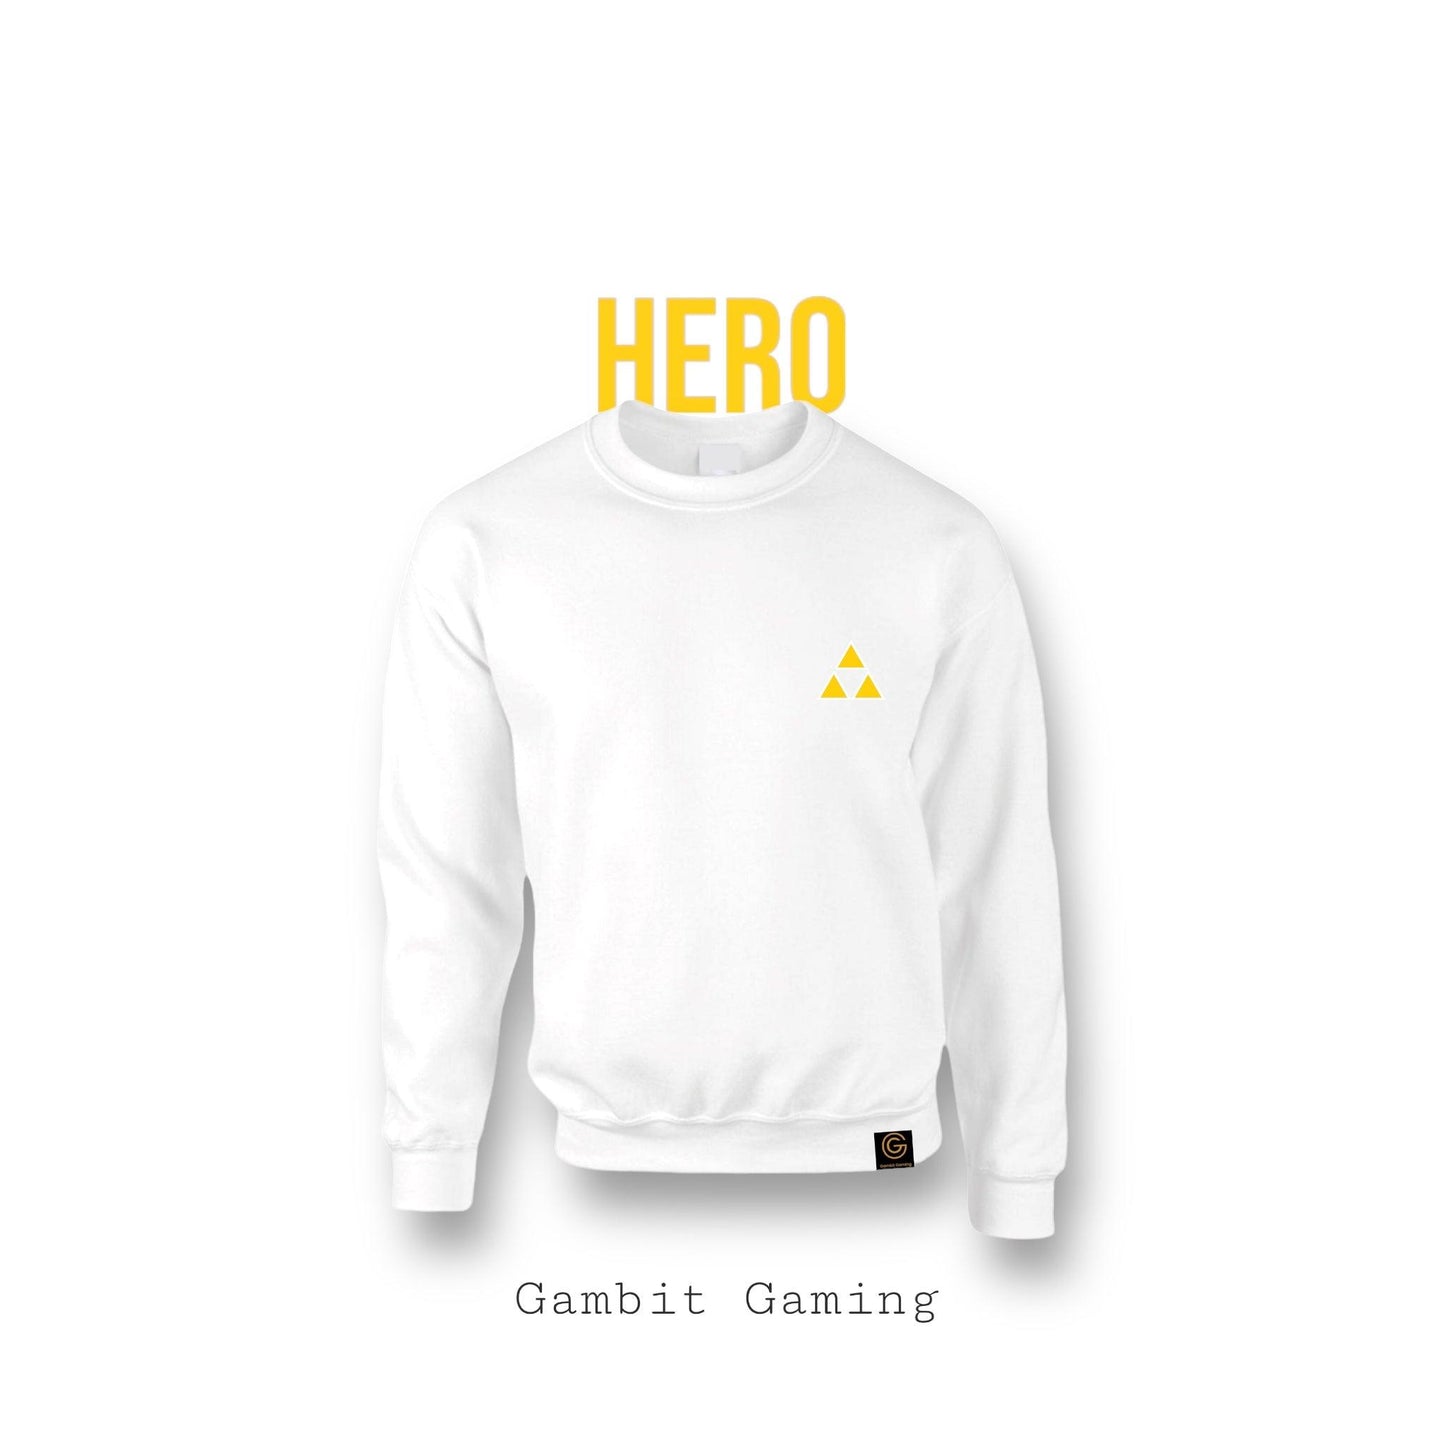 The Hero Sweater - Gambit Gaming